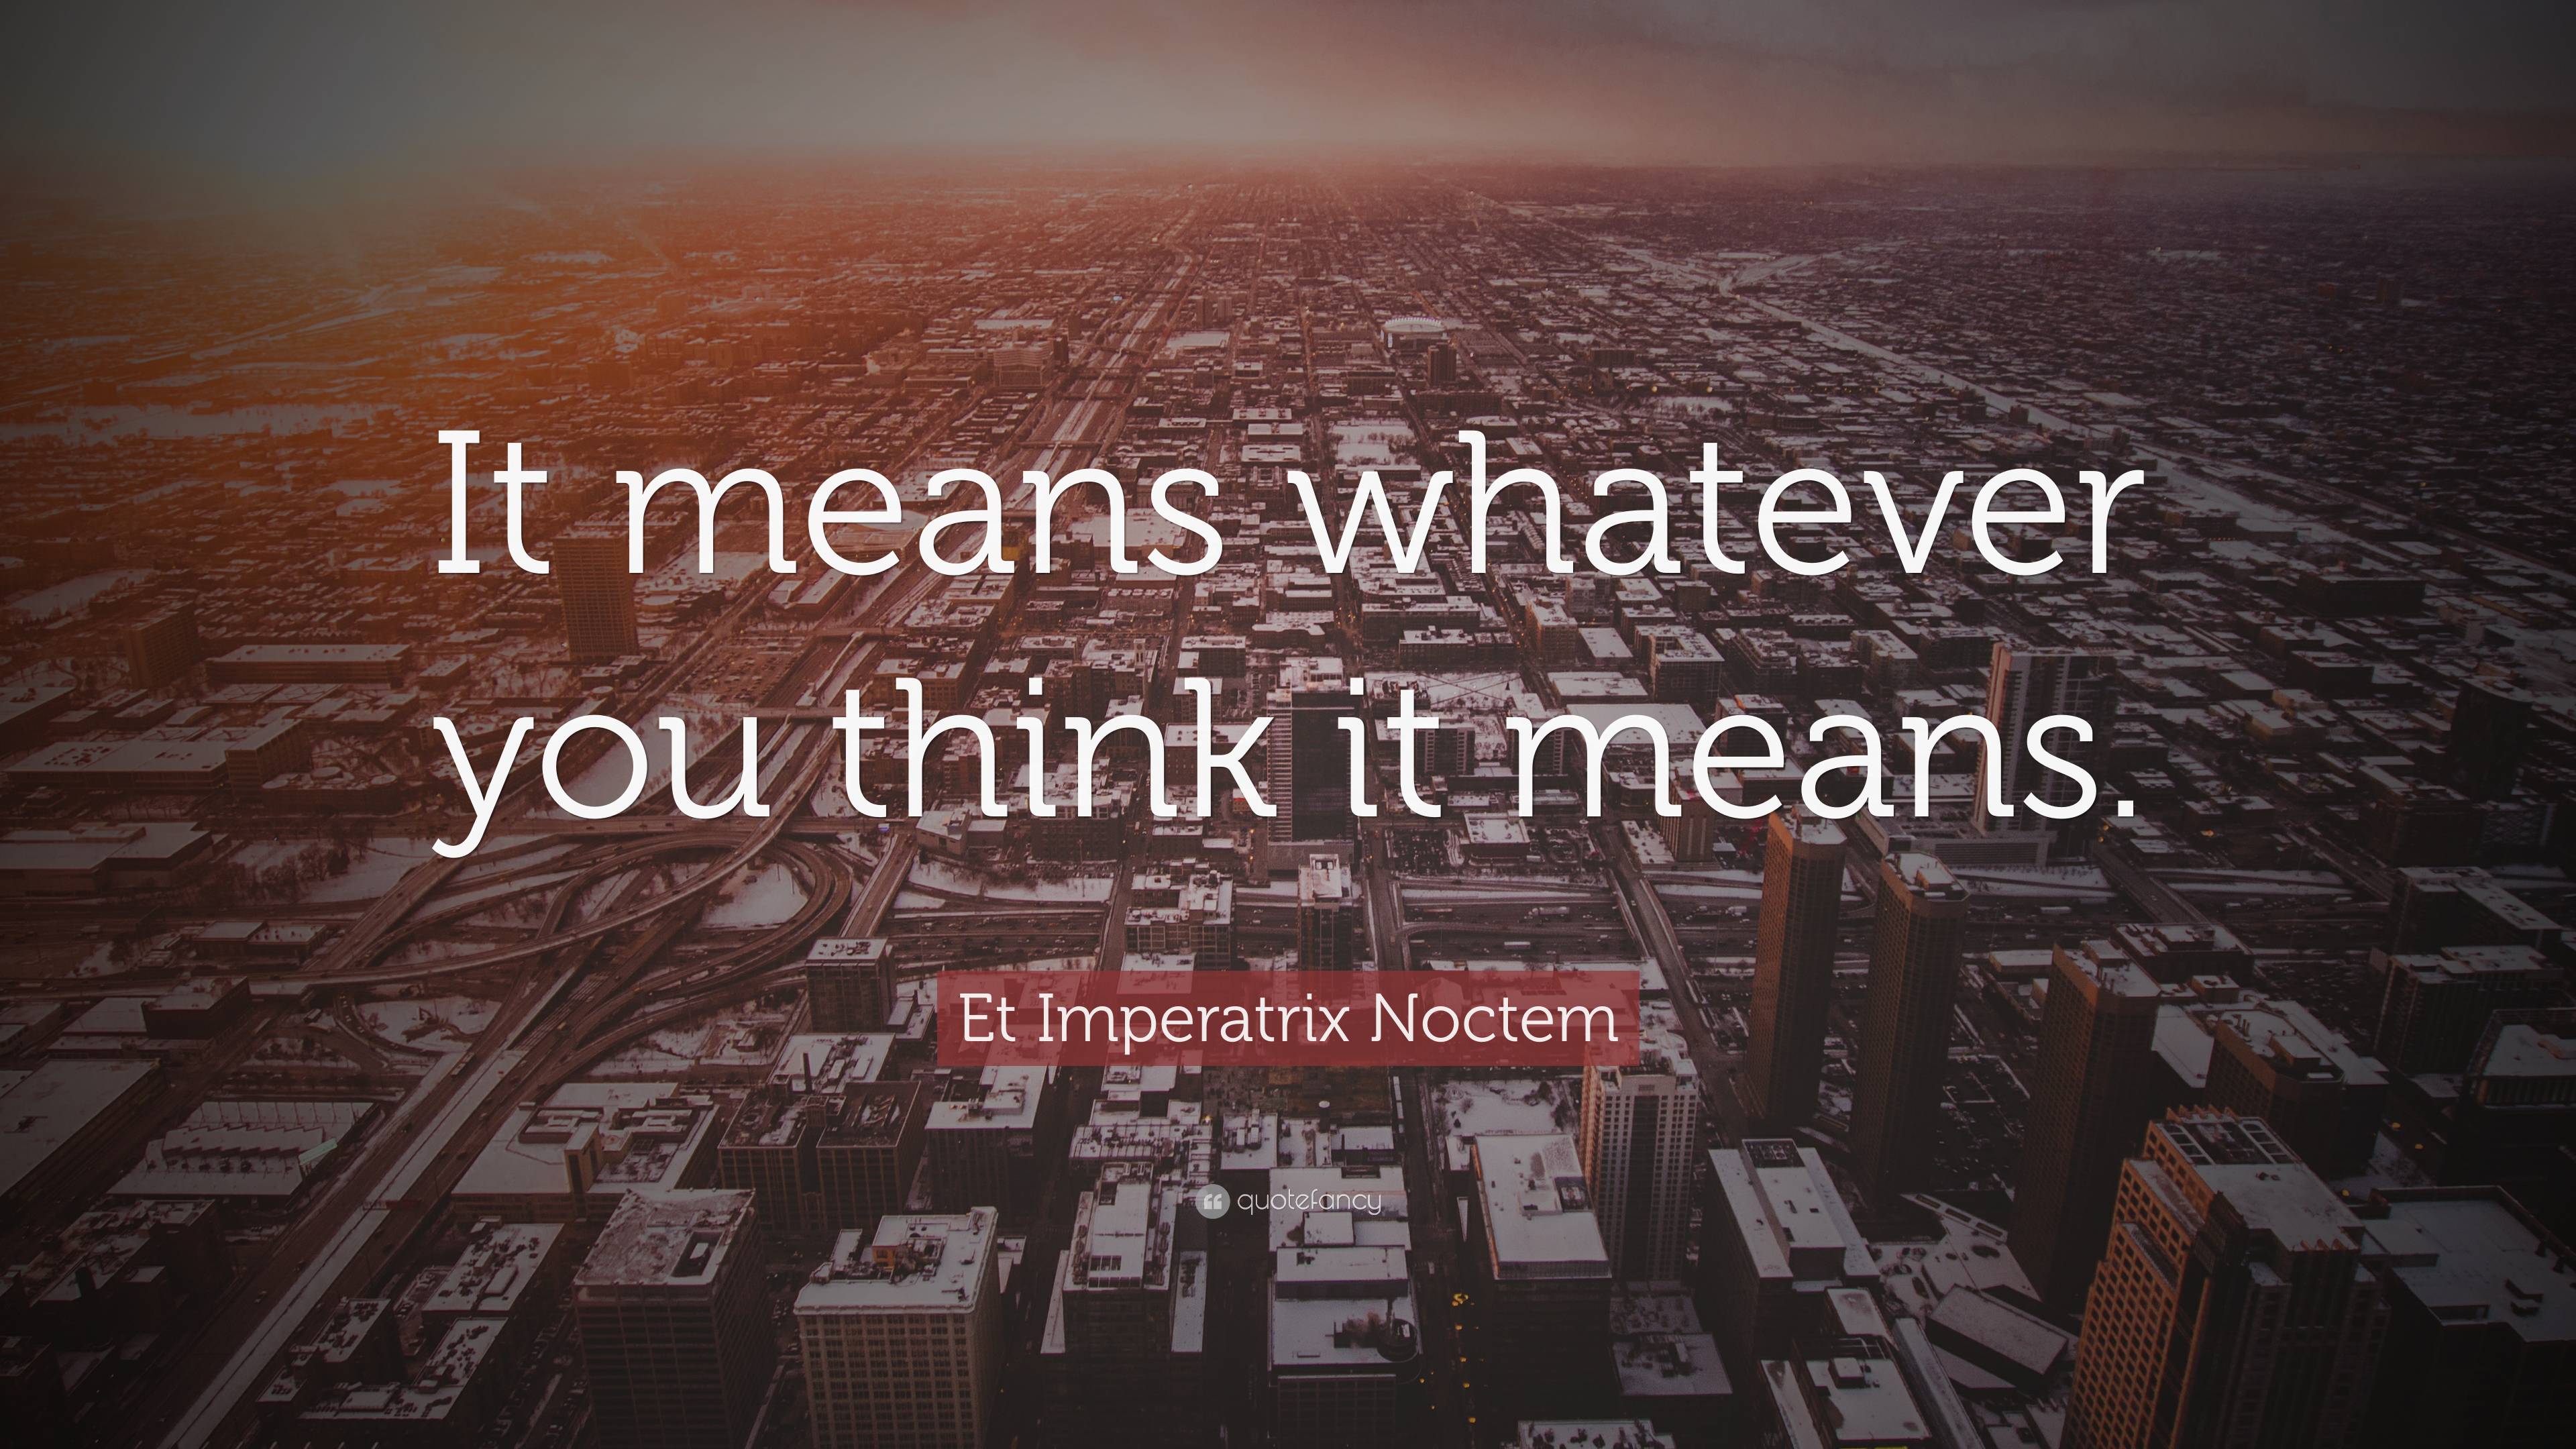 Et Imperatrix Noctem Quote: “It means whatever you think it means.”